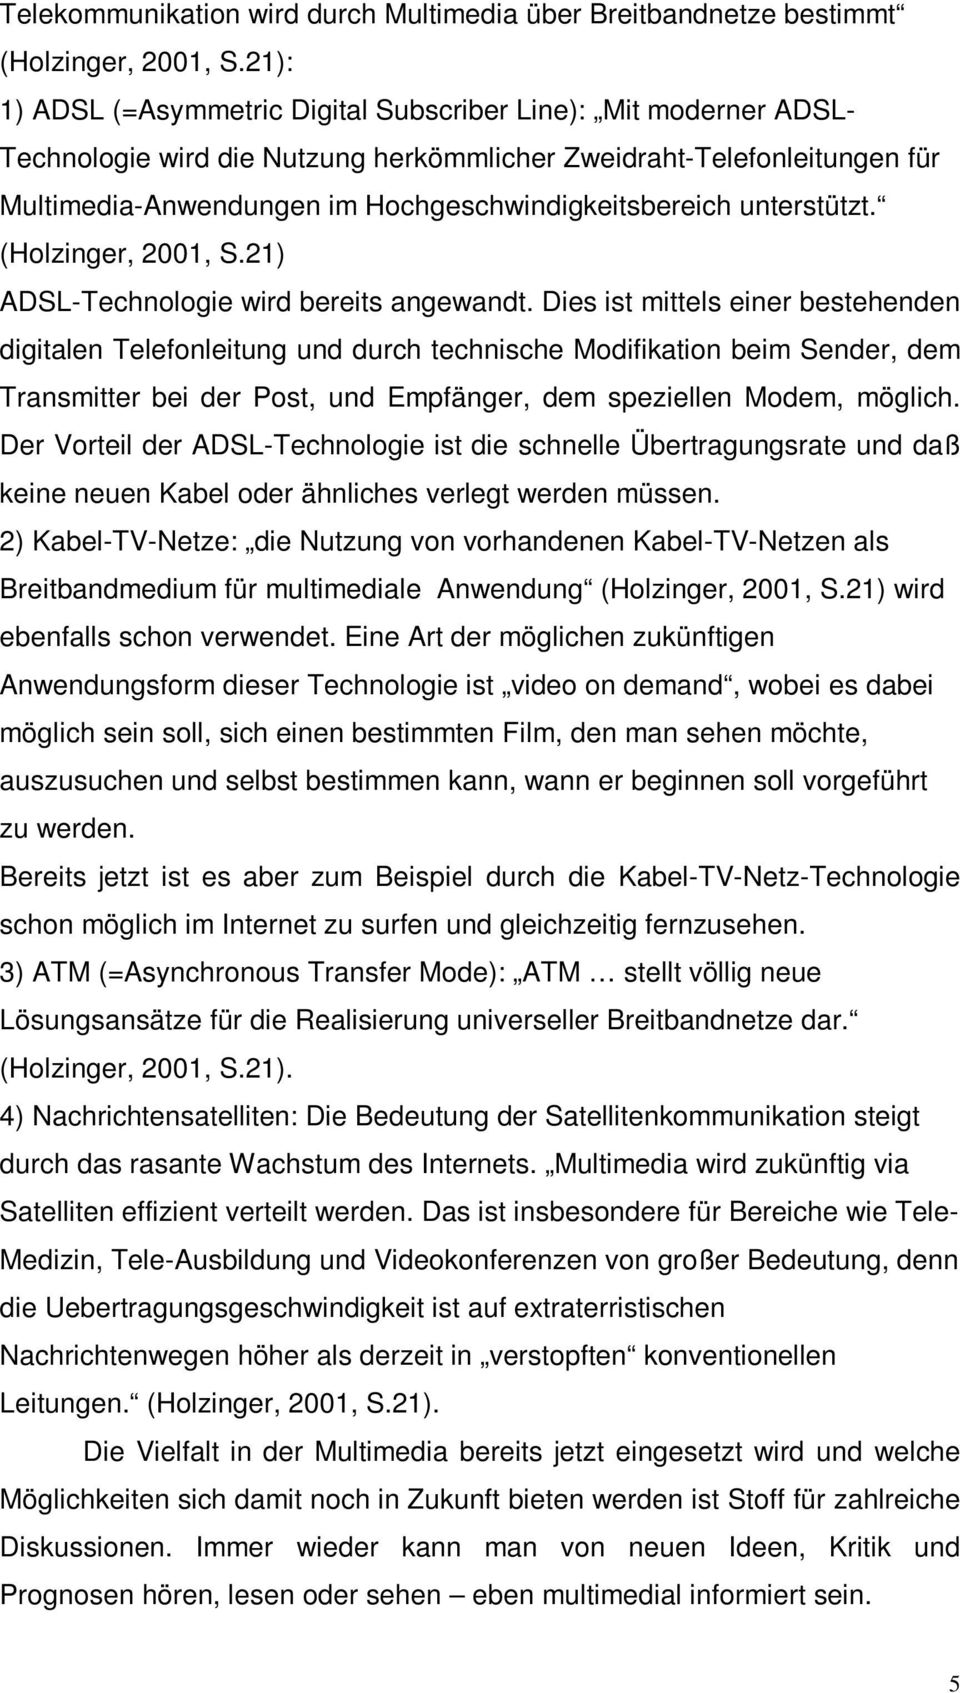 unterstützt. (Holzinger, 2001, S.21) ADSL-Technologie wird bereits angewandt.